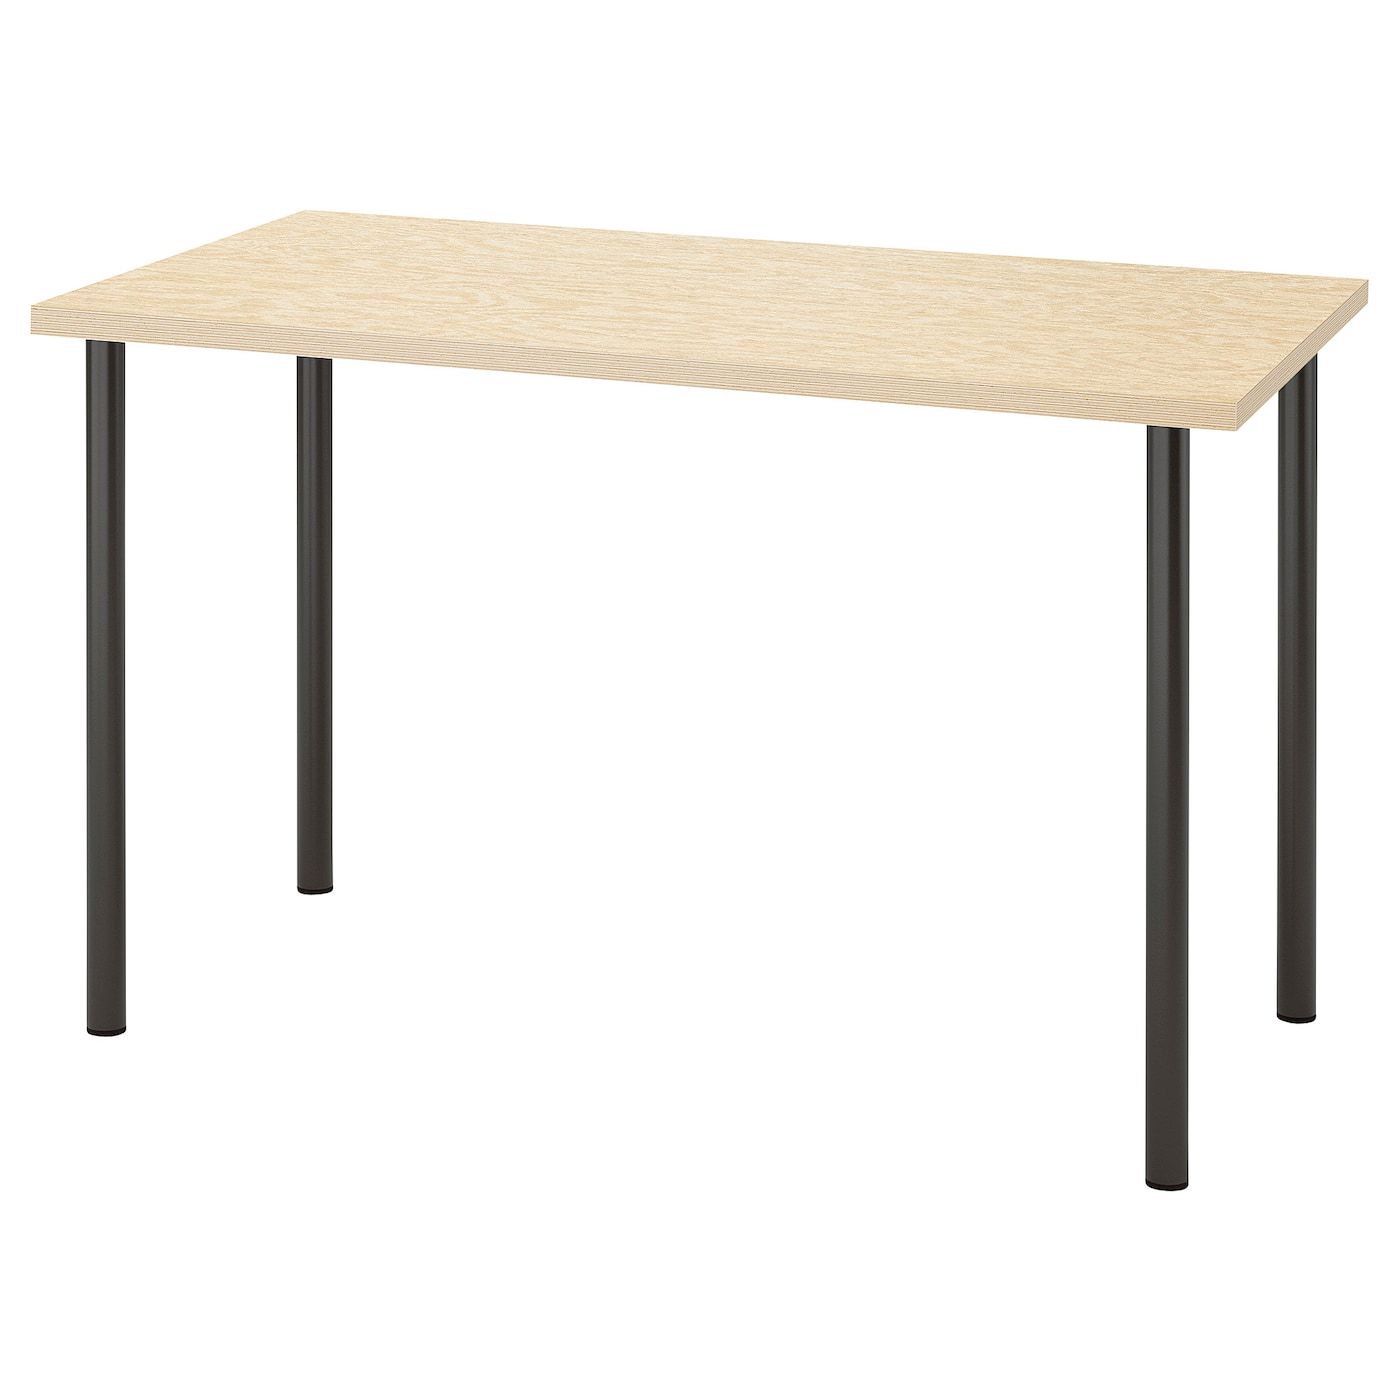 Письменный стол - IKEA MITTCIRKEL/ADILS, 120х60 см, сосна/темно-серый, МИТЦИРКЕЛЬ/АДИЛЬС ИКЕА